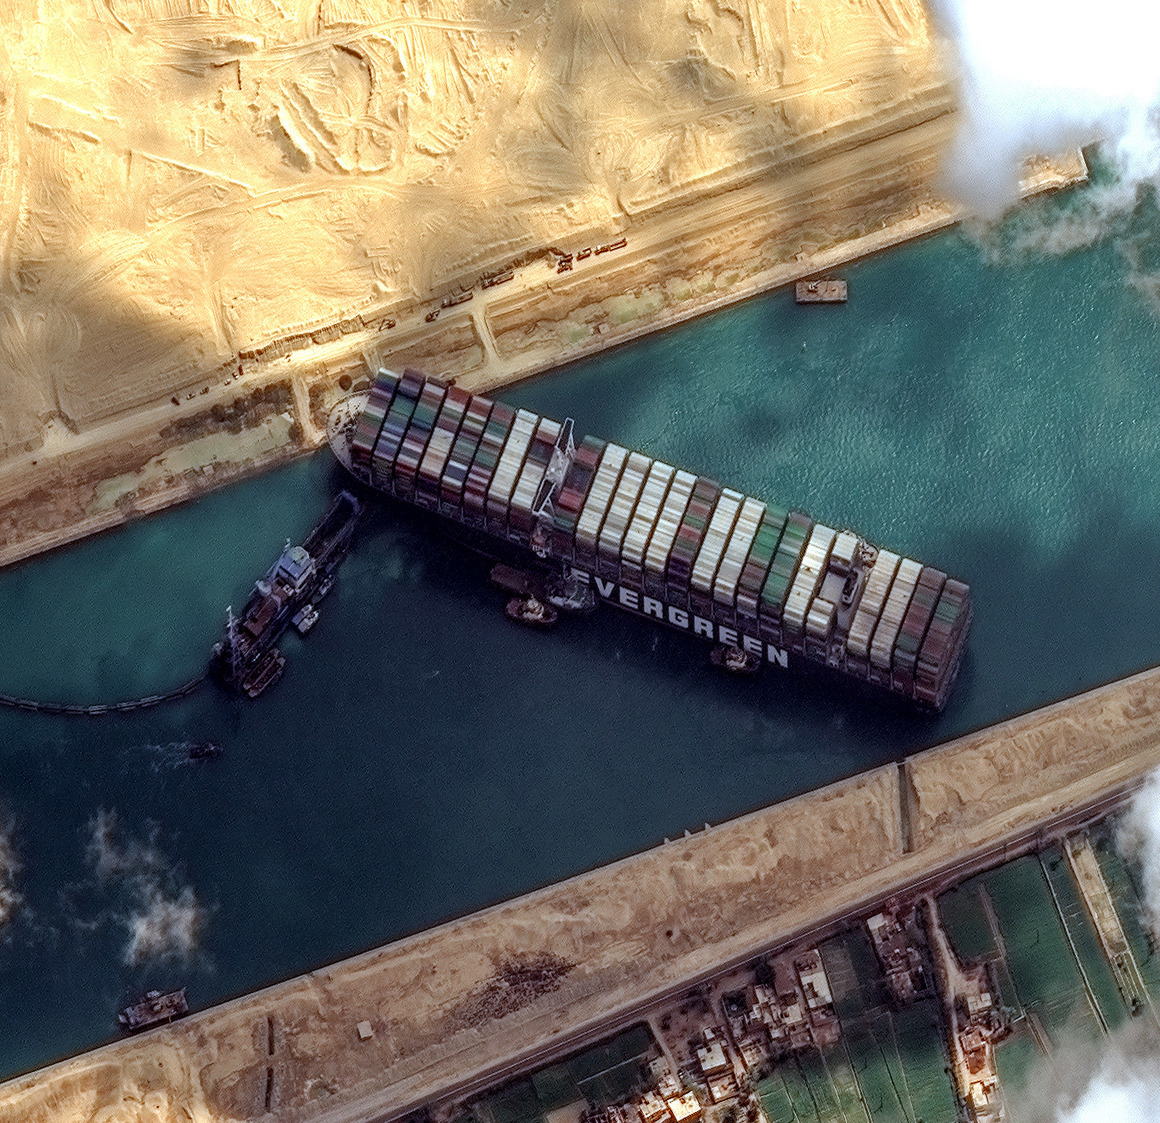 <p>Март 2021 г. ще остане в историята с куриозното засядане на тежкотоварния <strong>кораб Ever Given в Суецкия канал</strong>. Един от най-важните световни търговски маршрути беше блокиран в продължение на седмица, а докато египетските власти се мъчеха да отпушат канала, близо 400 кораба стояха на изчакване. </p>
